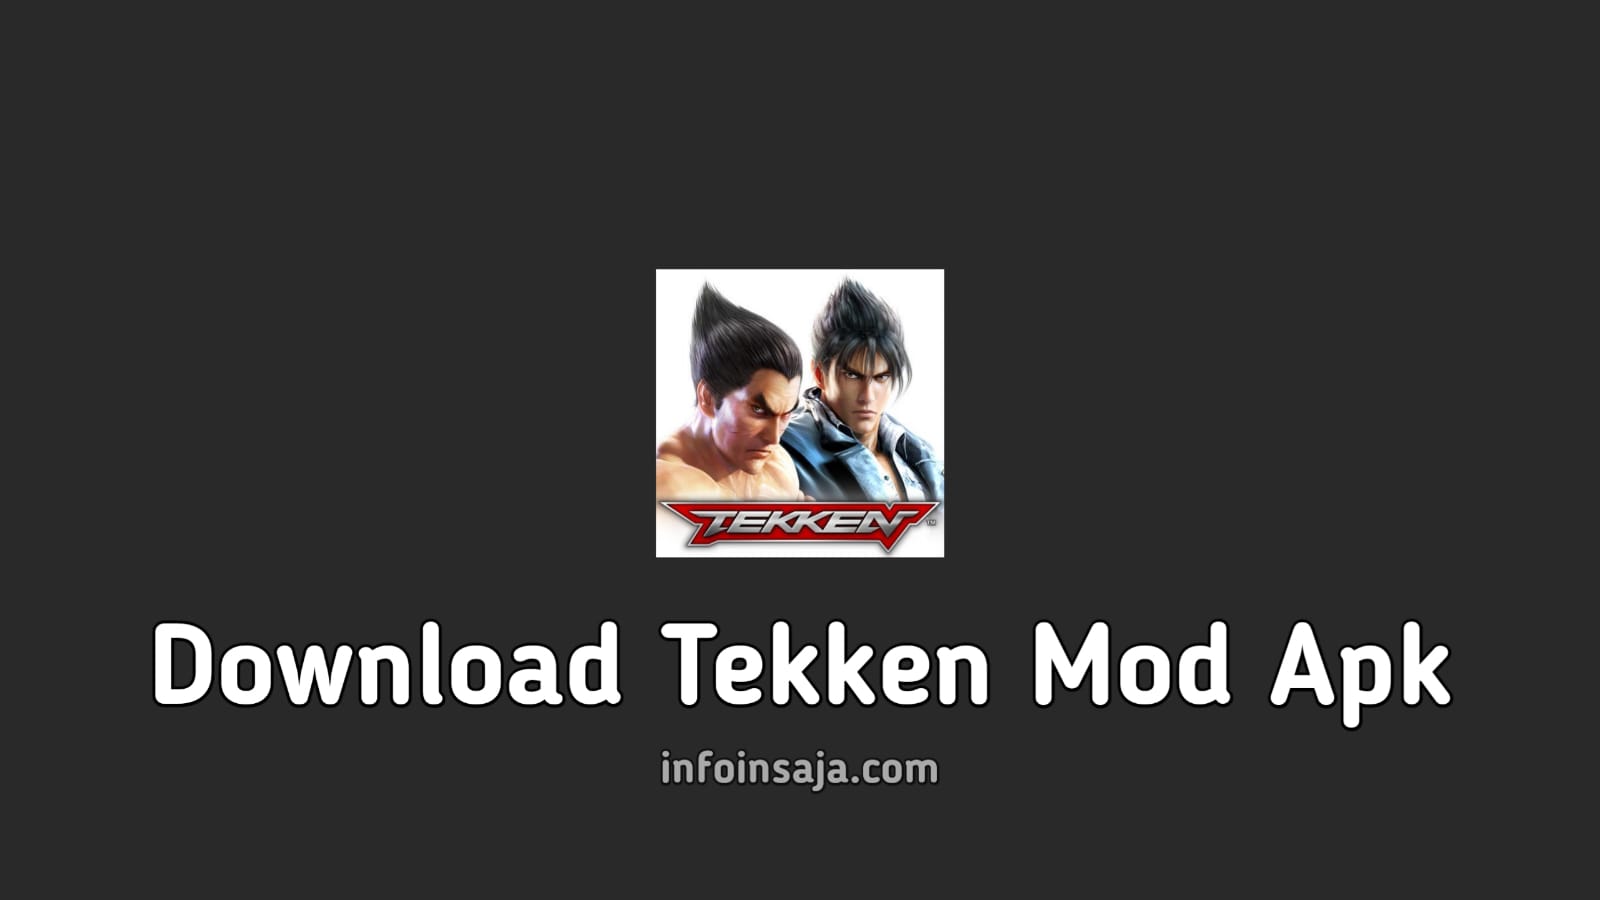 Download Tekken Mod Apk